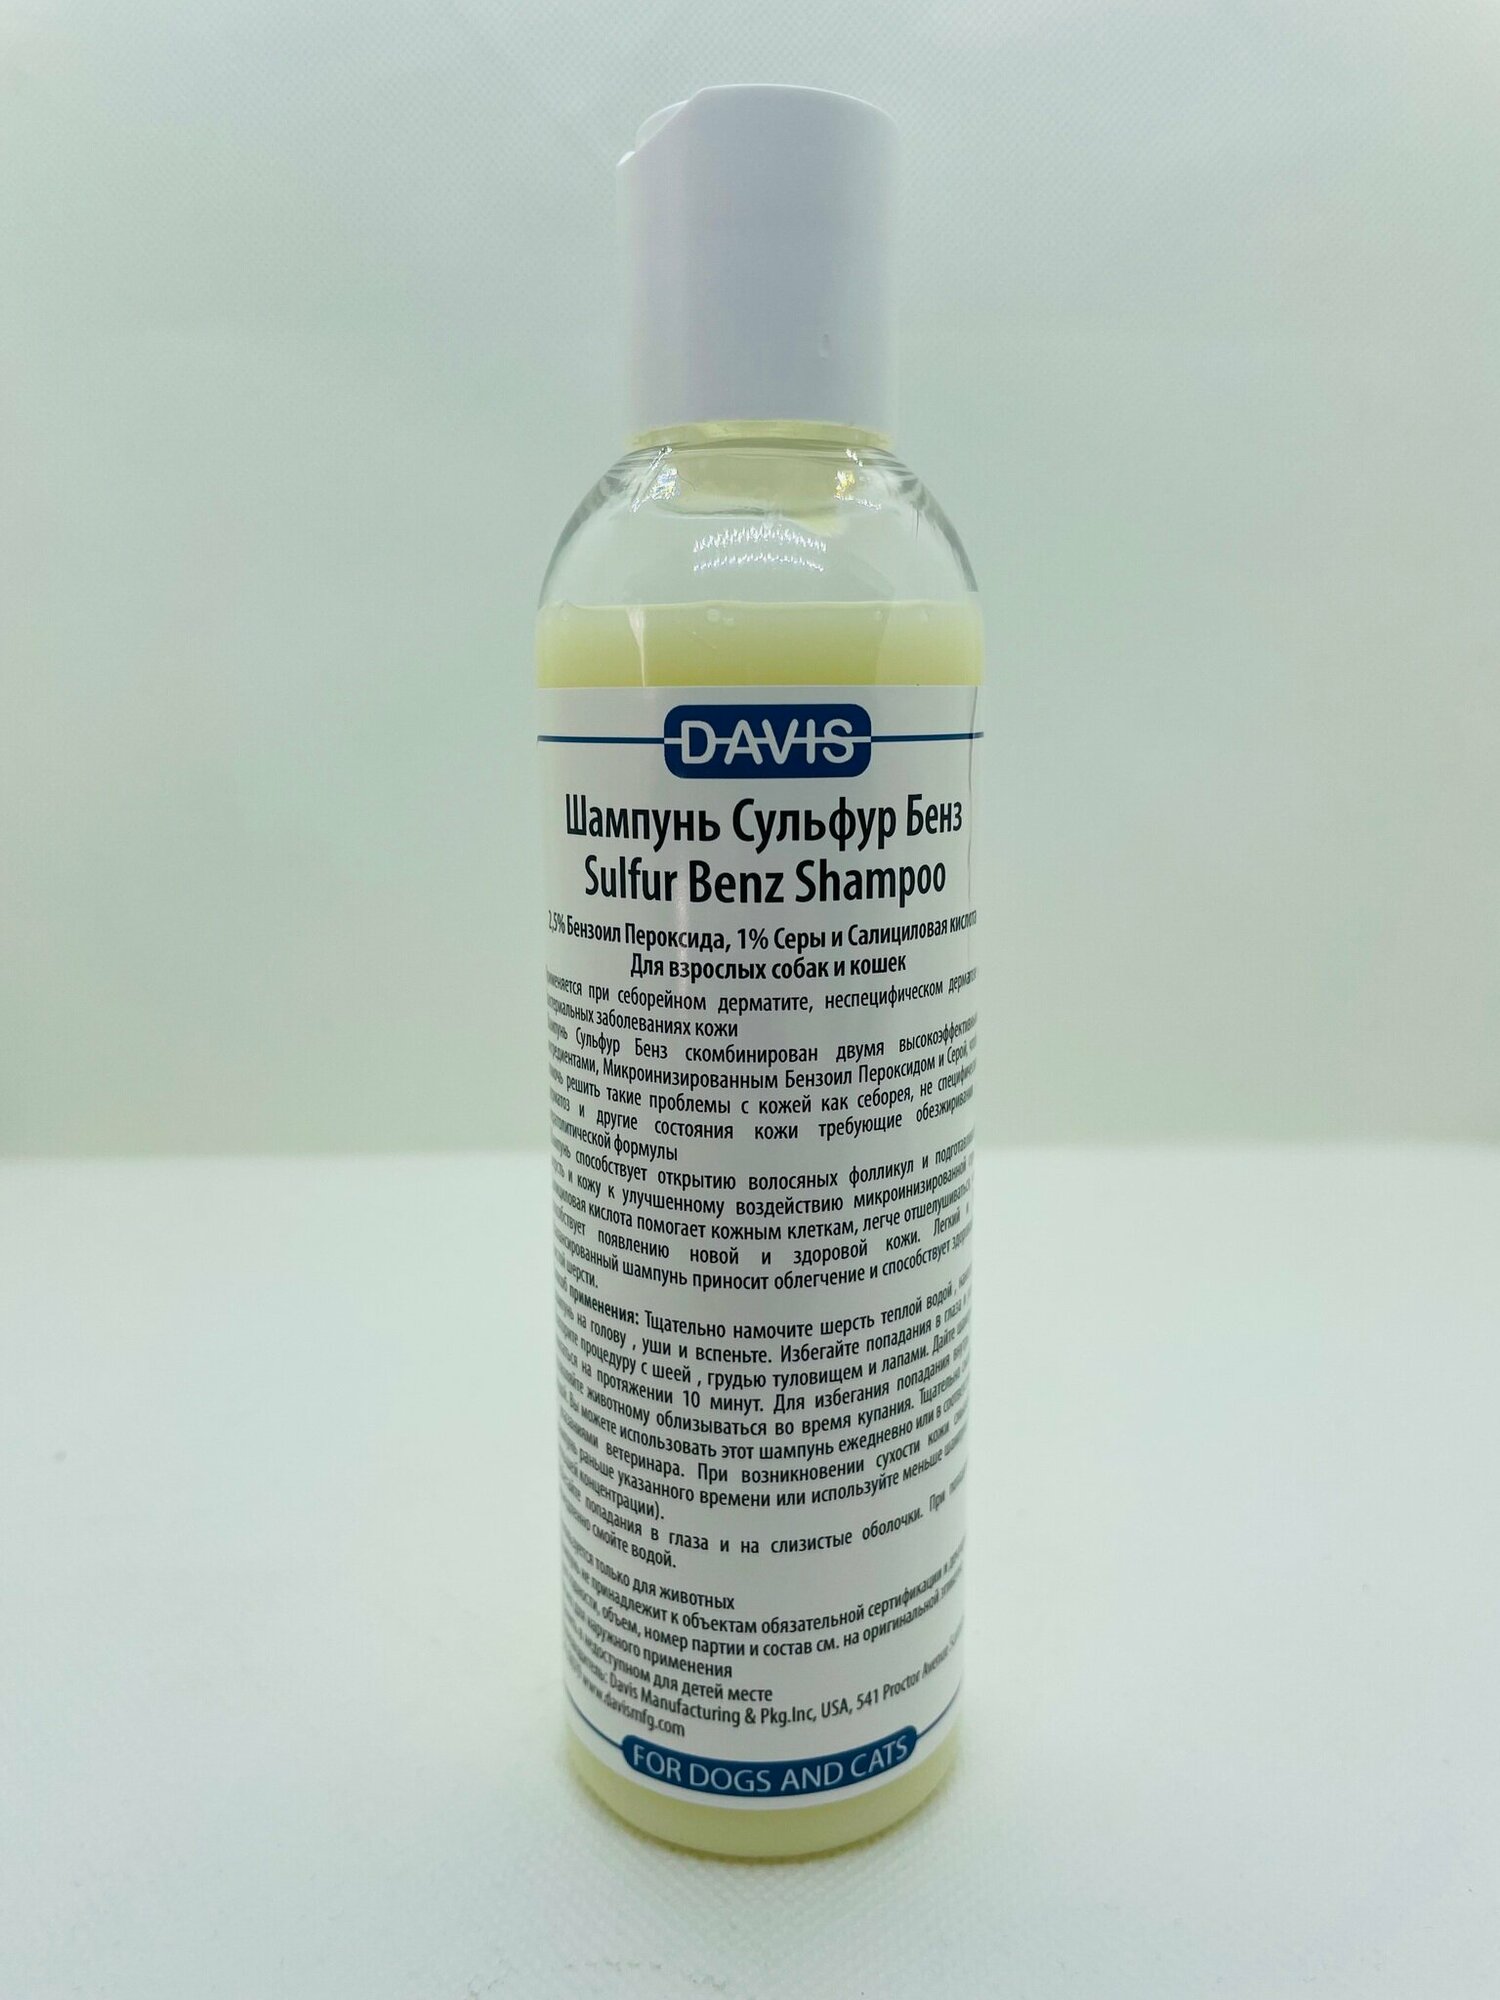 Davis Sulfur Benz шампунь для лечения дерматита 200мл